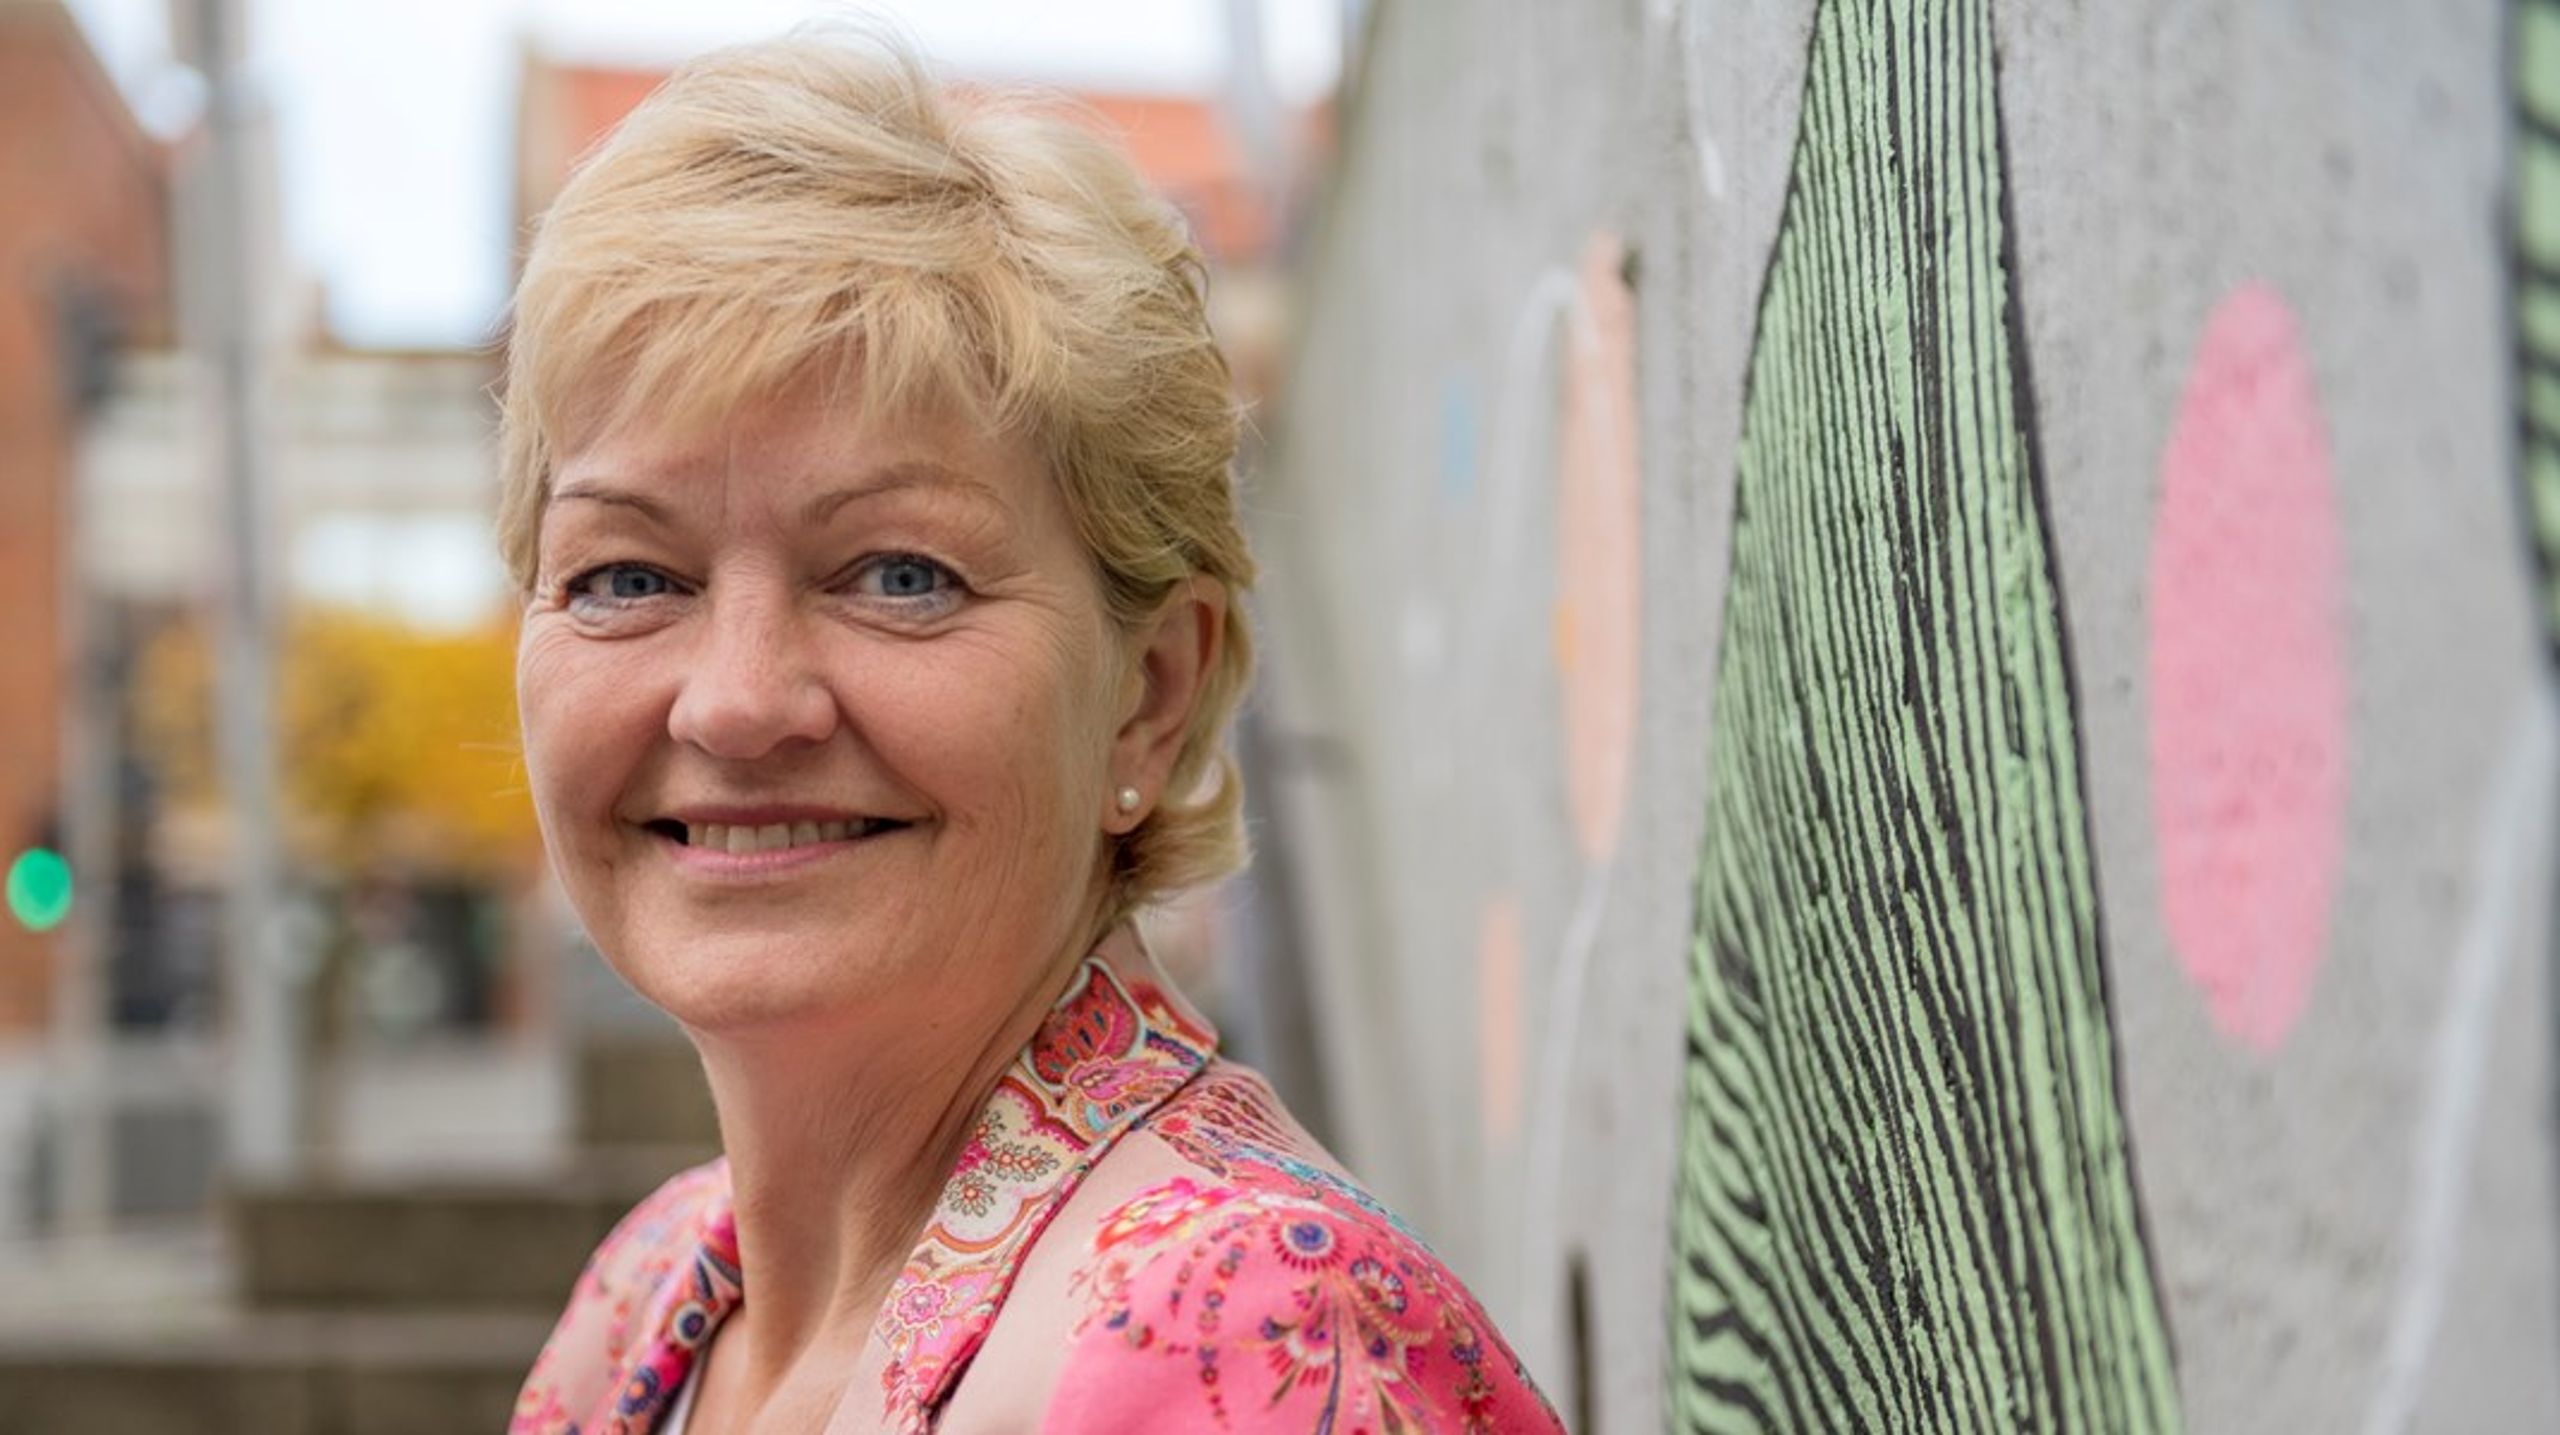 Den tidligere Venstre-profil og mangeårige minister Eva Kjer Hansen skal være ny partner og seniorkonsulent i rekrutterings- og konsulentbureauet Mangaard &amp; Partners Executive Search. Det skriver hun på LinkedIn.&nbsp;